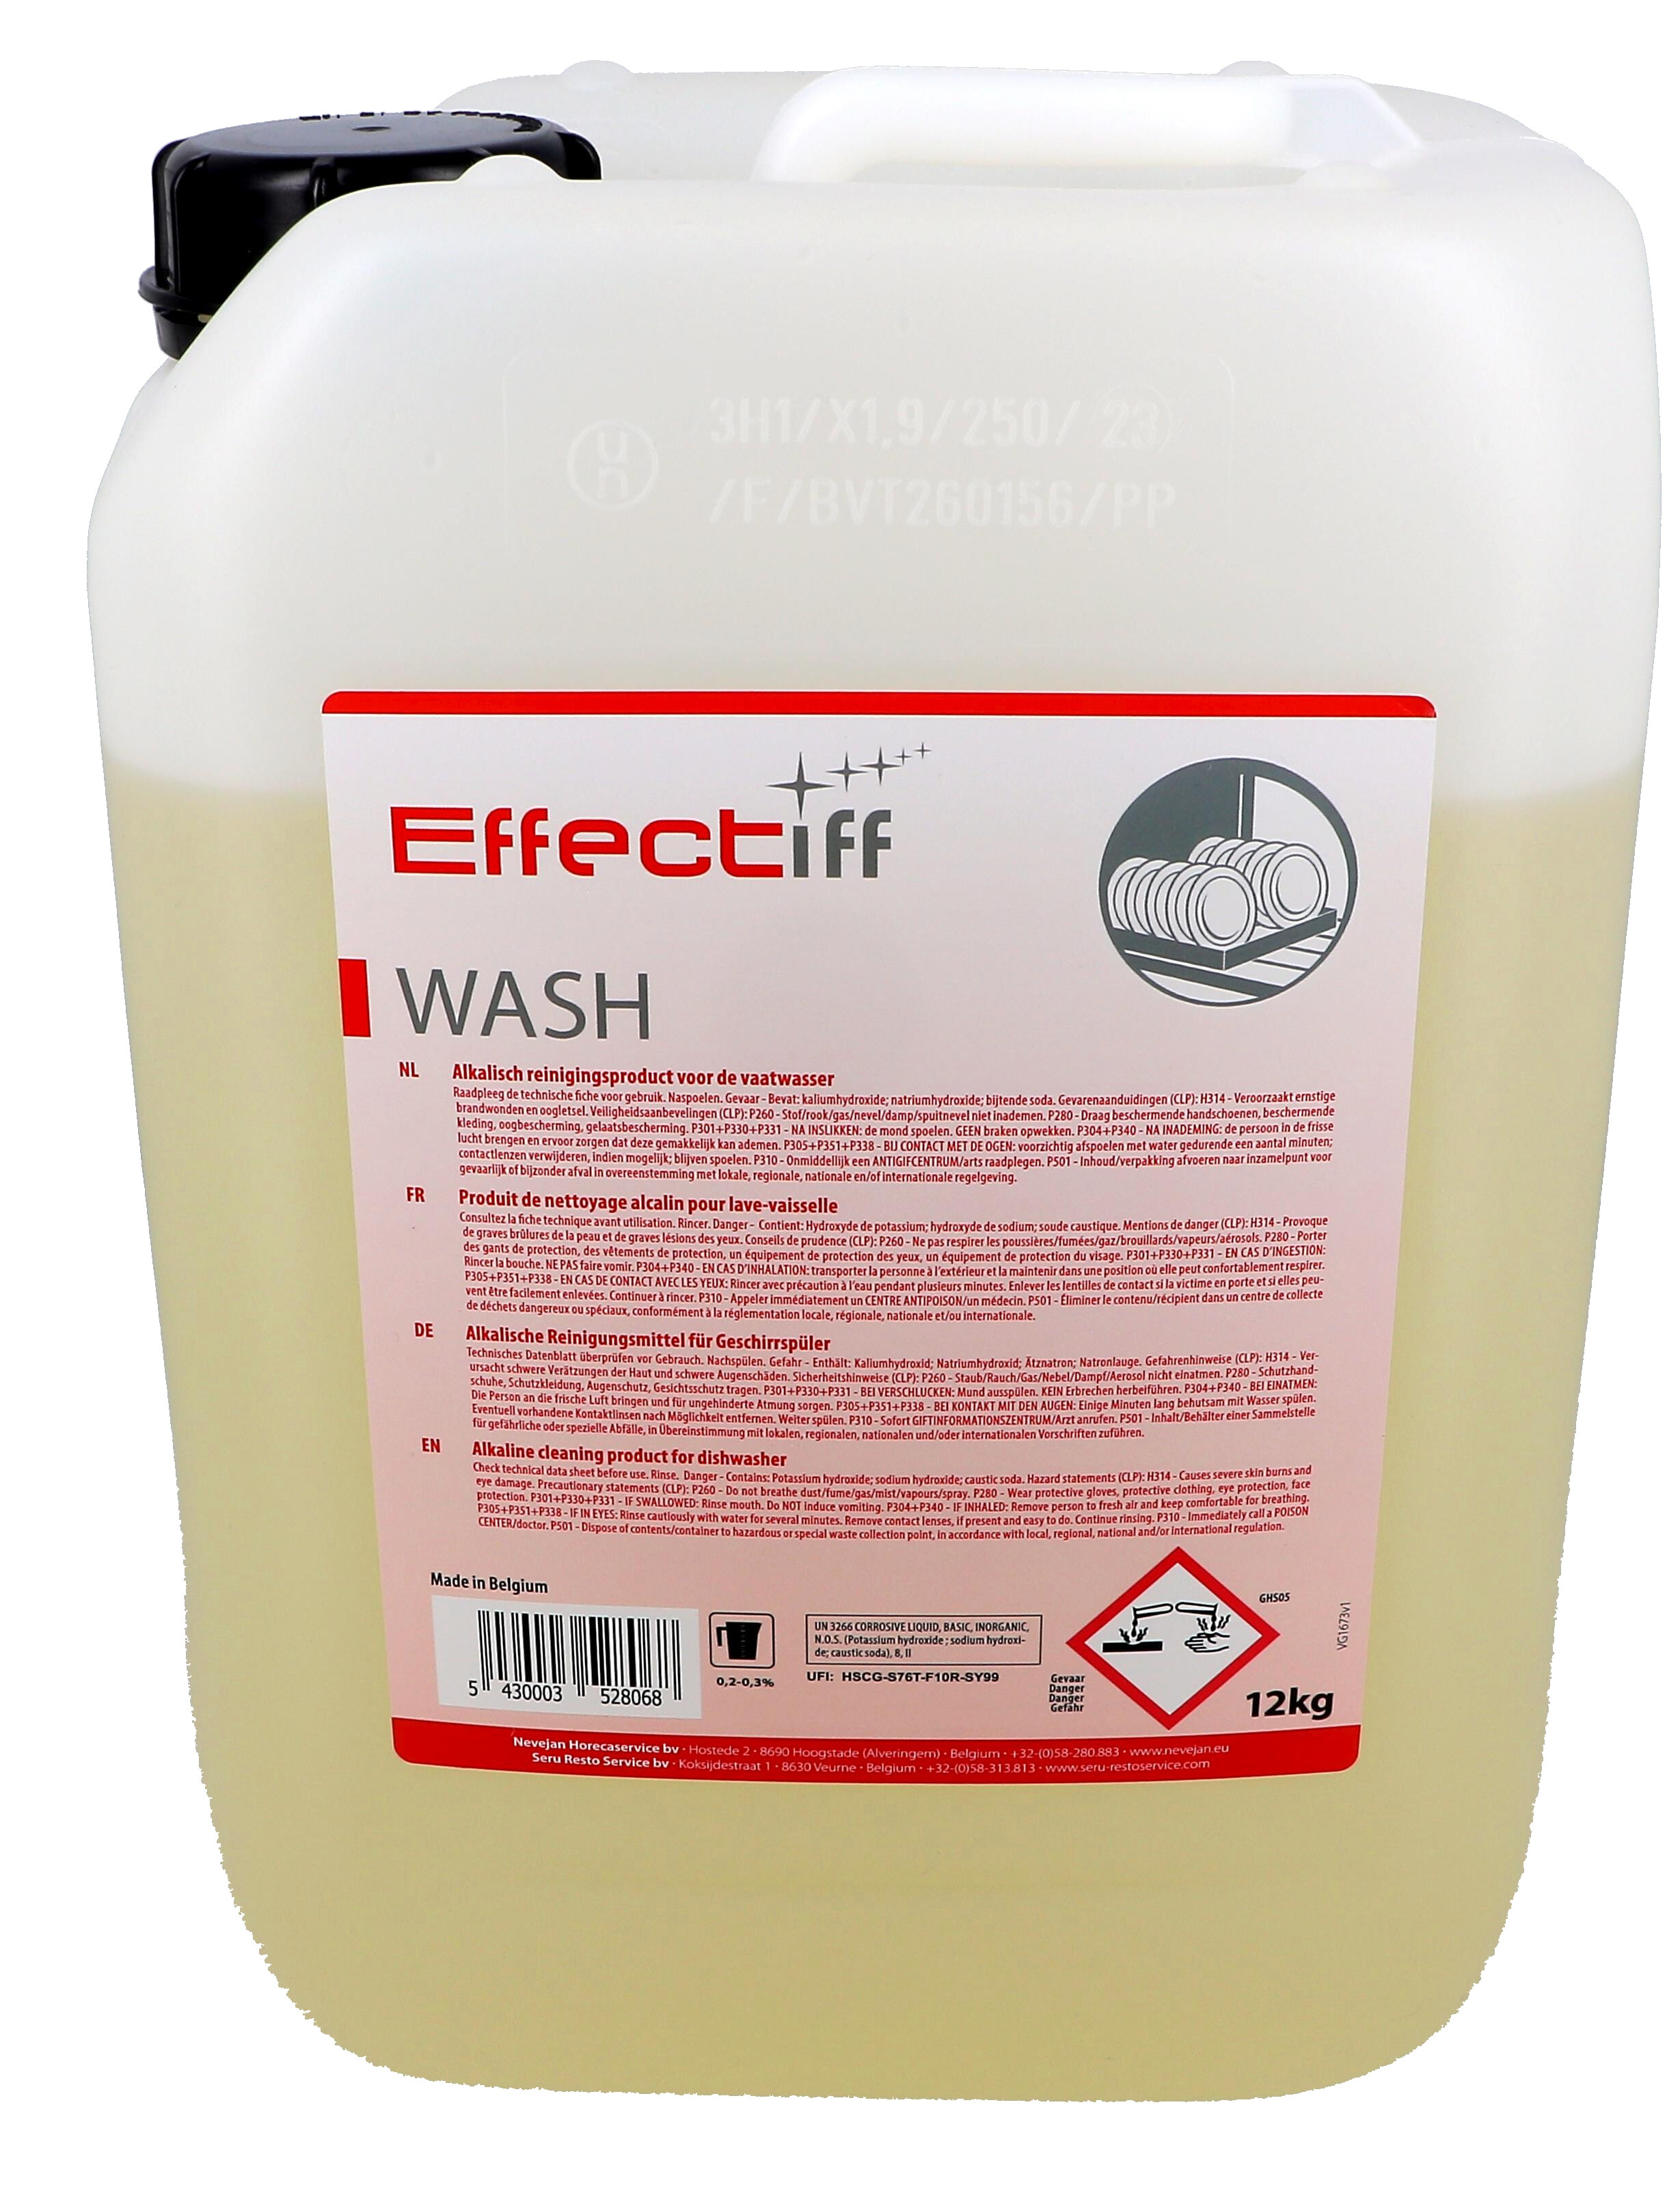 Effectiff Wash 12kg savon vaiselle liquide